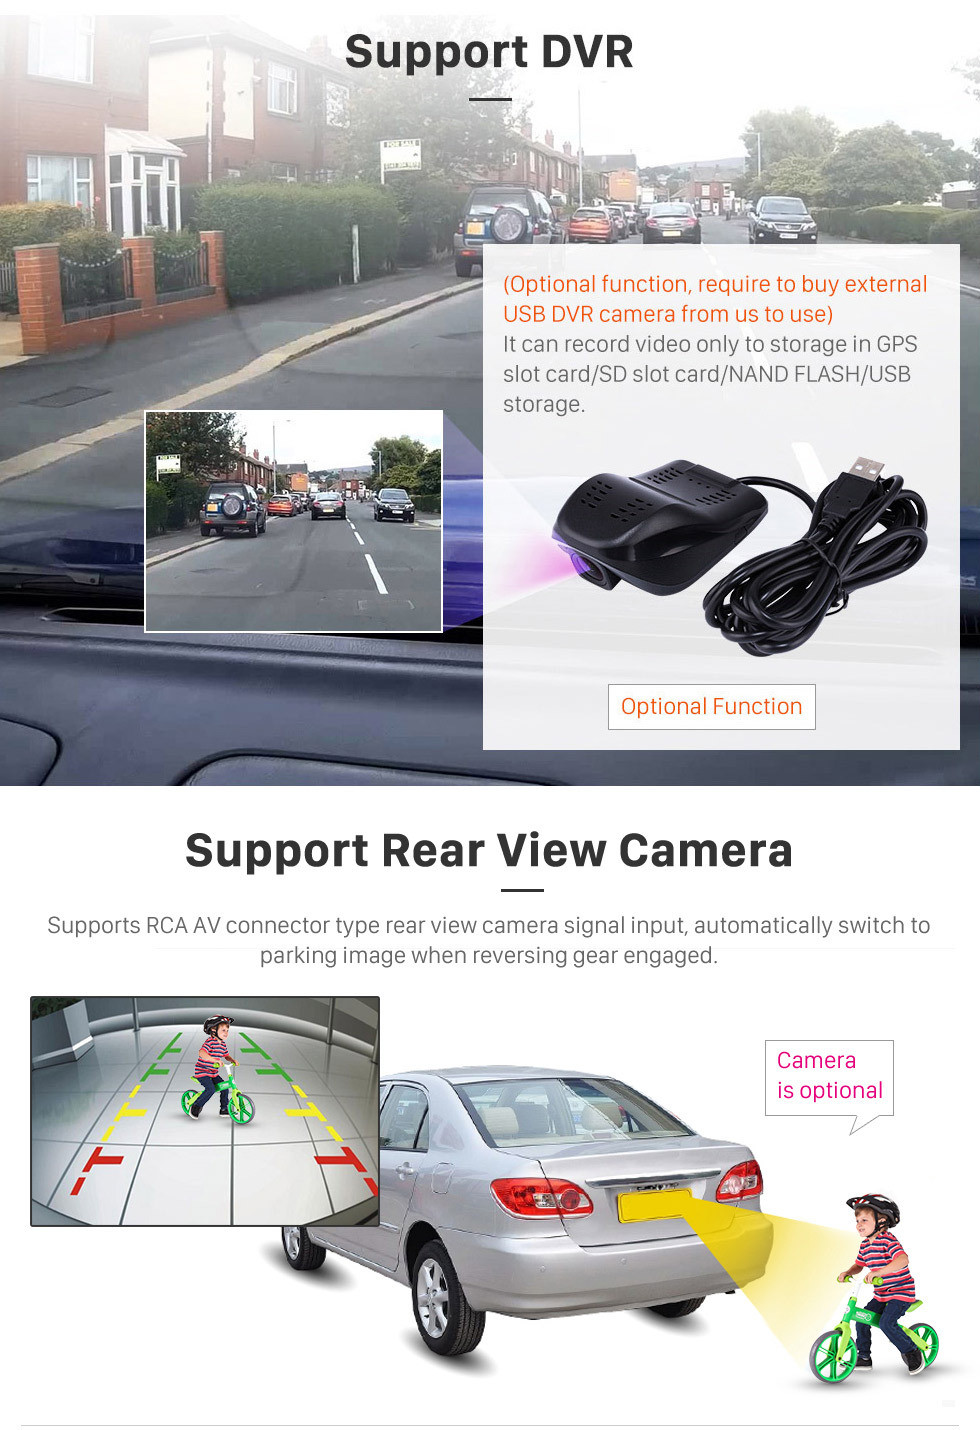 Seicane 10,1-дюймовый HD сенсорный экран Android 10.0 GPS-навигатор для Toyota Camry LHD с поддержкой Bluetooth AUX и управлением рулем Carplay